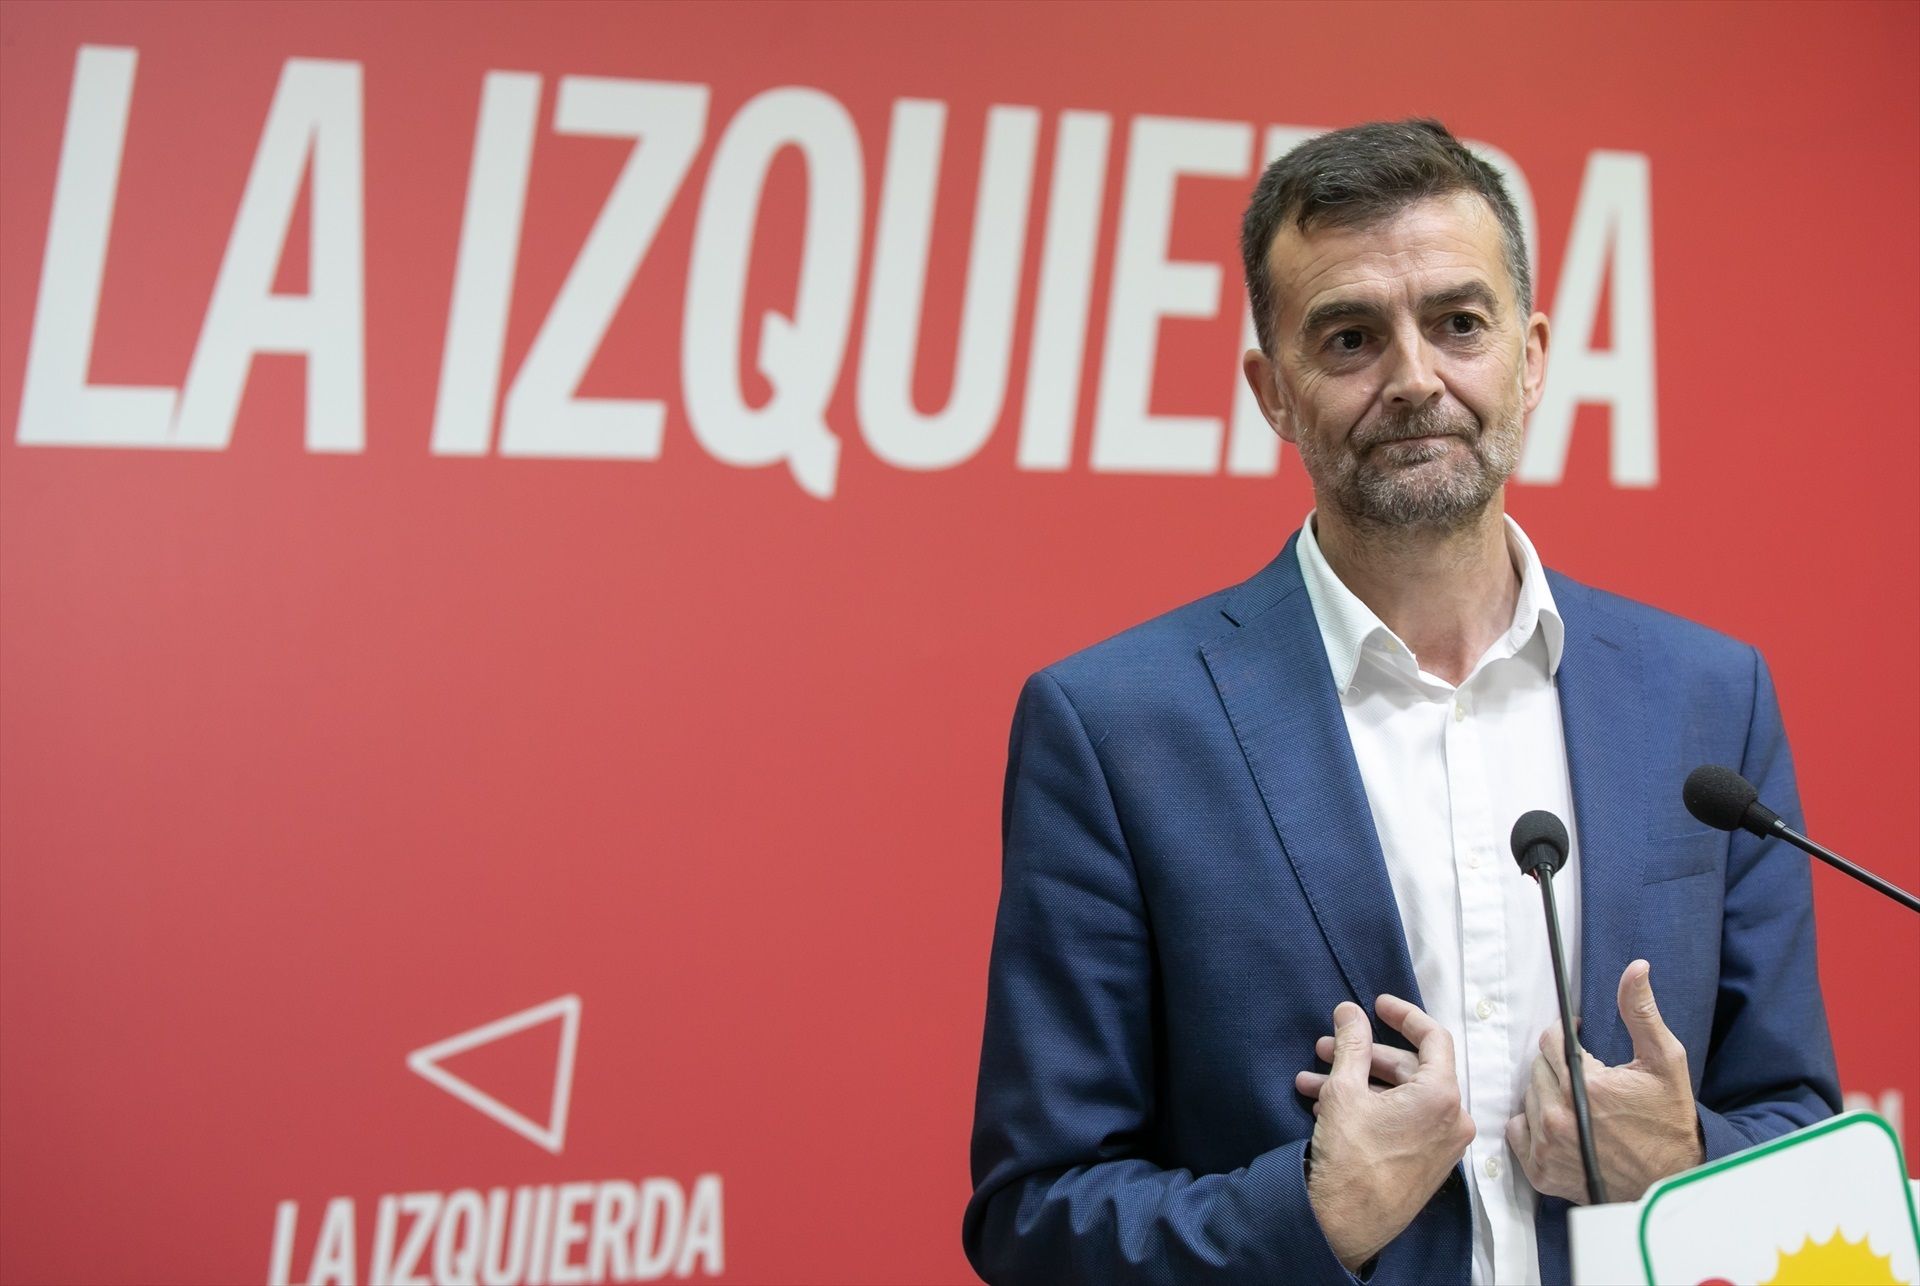 Antonio Maíllo gana el pulso a la ministra Sira Rego y será el líder de Izquierda Unida